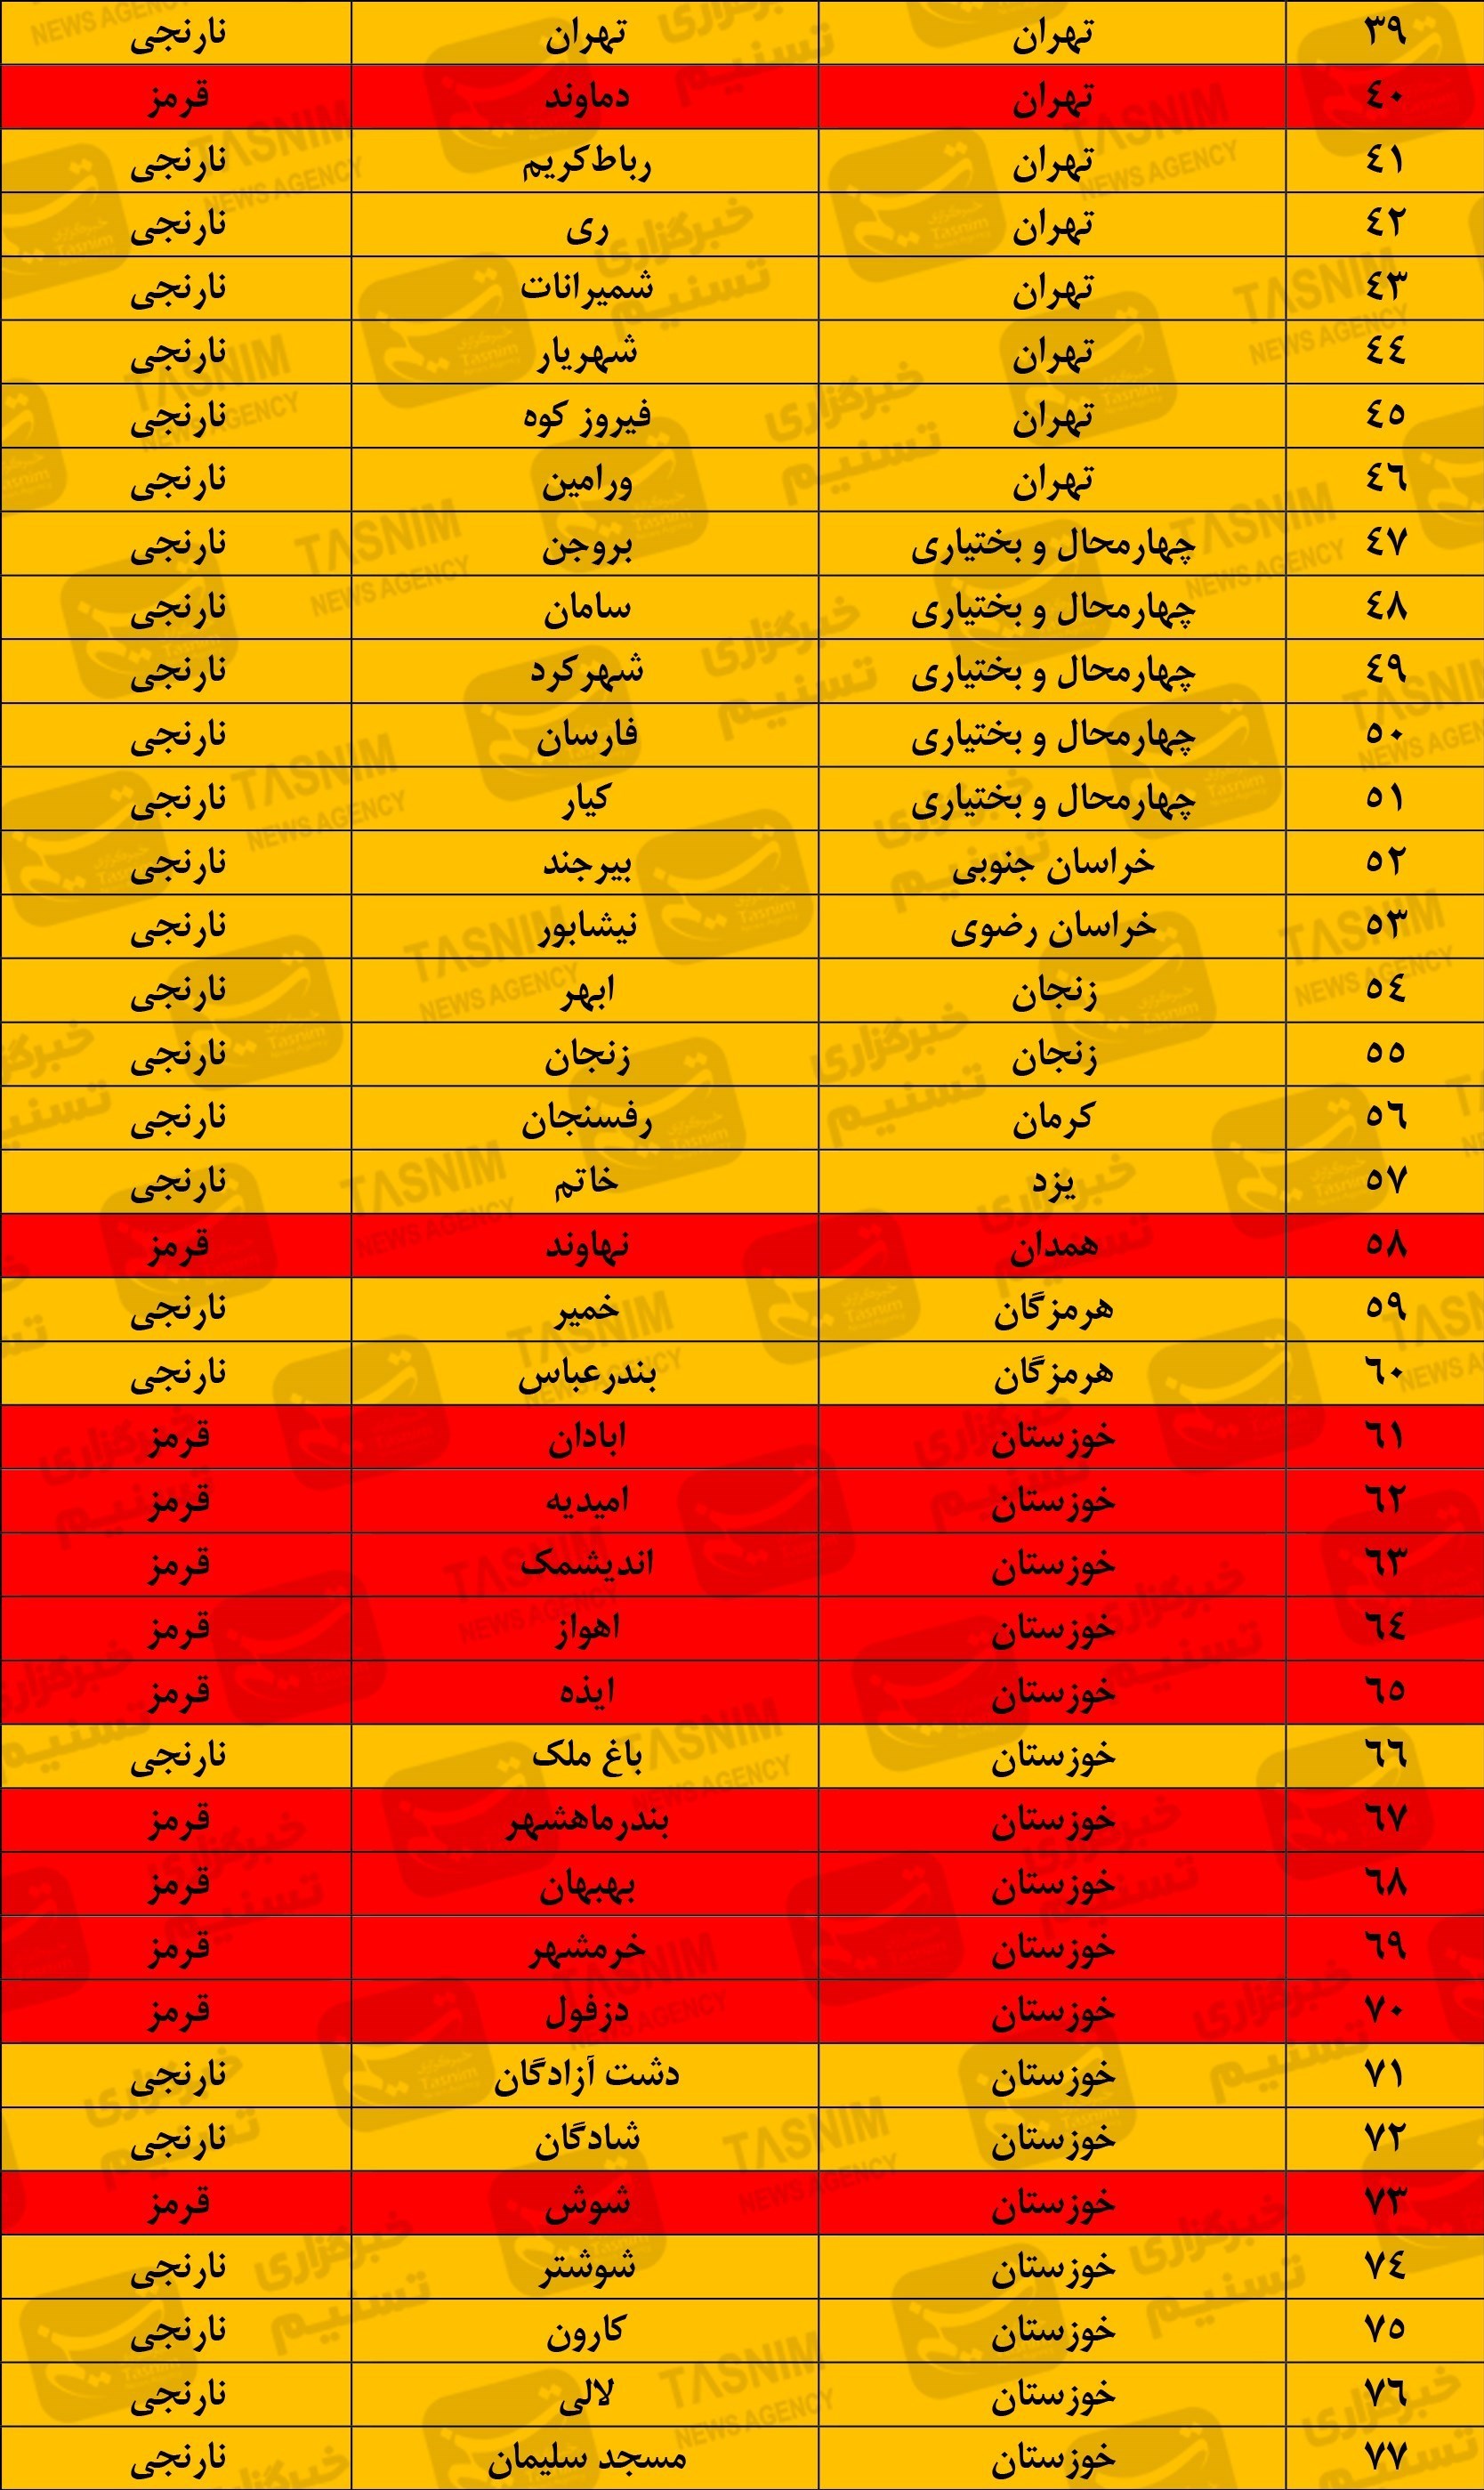 جدیدترین رنگ بندی کرونایی ایران/ ۲ هفته آینده شاهد افزایش آمار ابتلا هستیم + نقشه و جدول